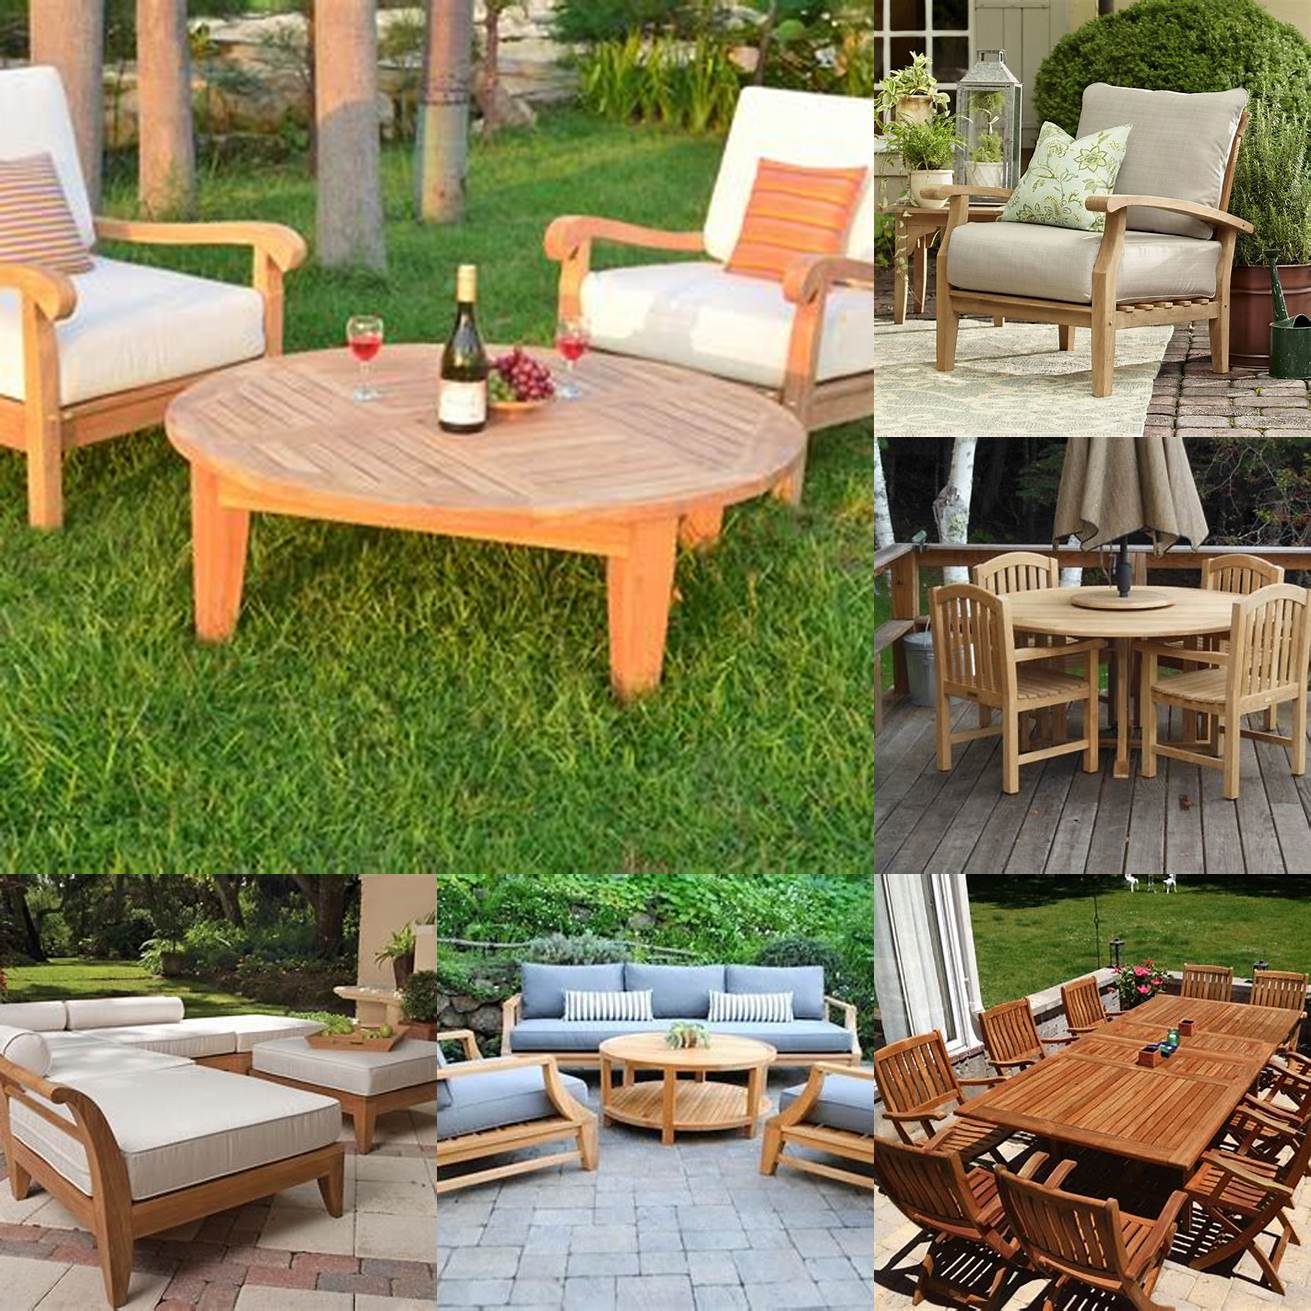 Benefits of teak outdoor furniture